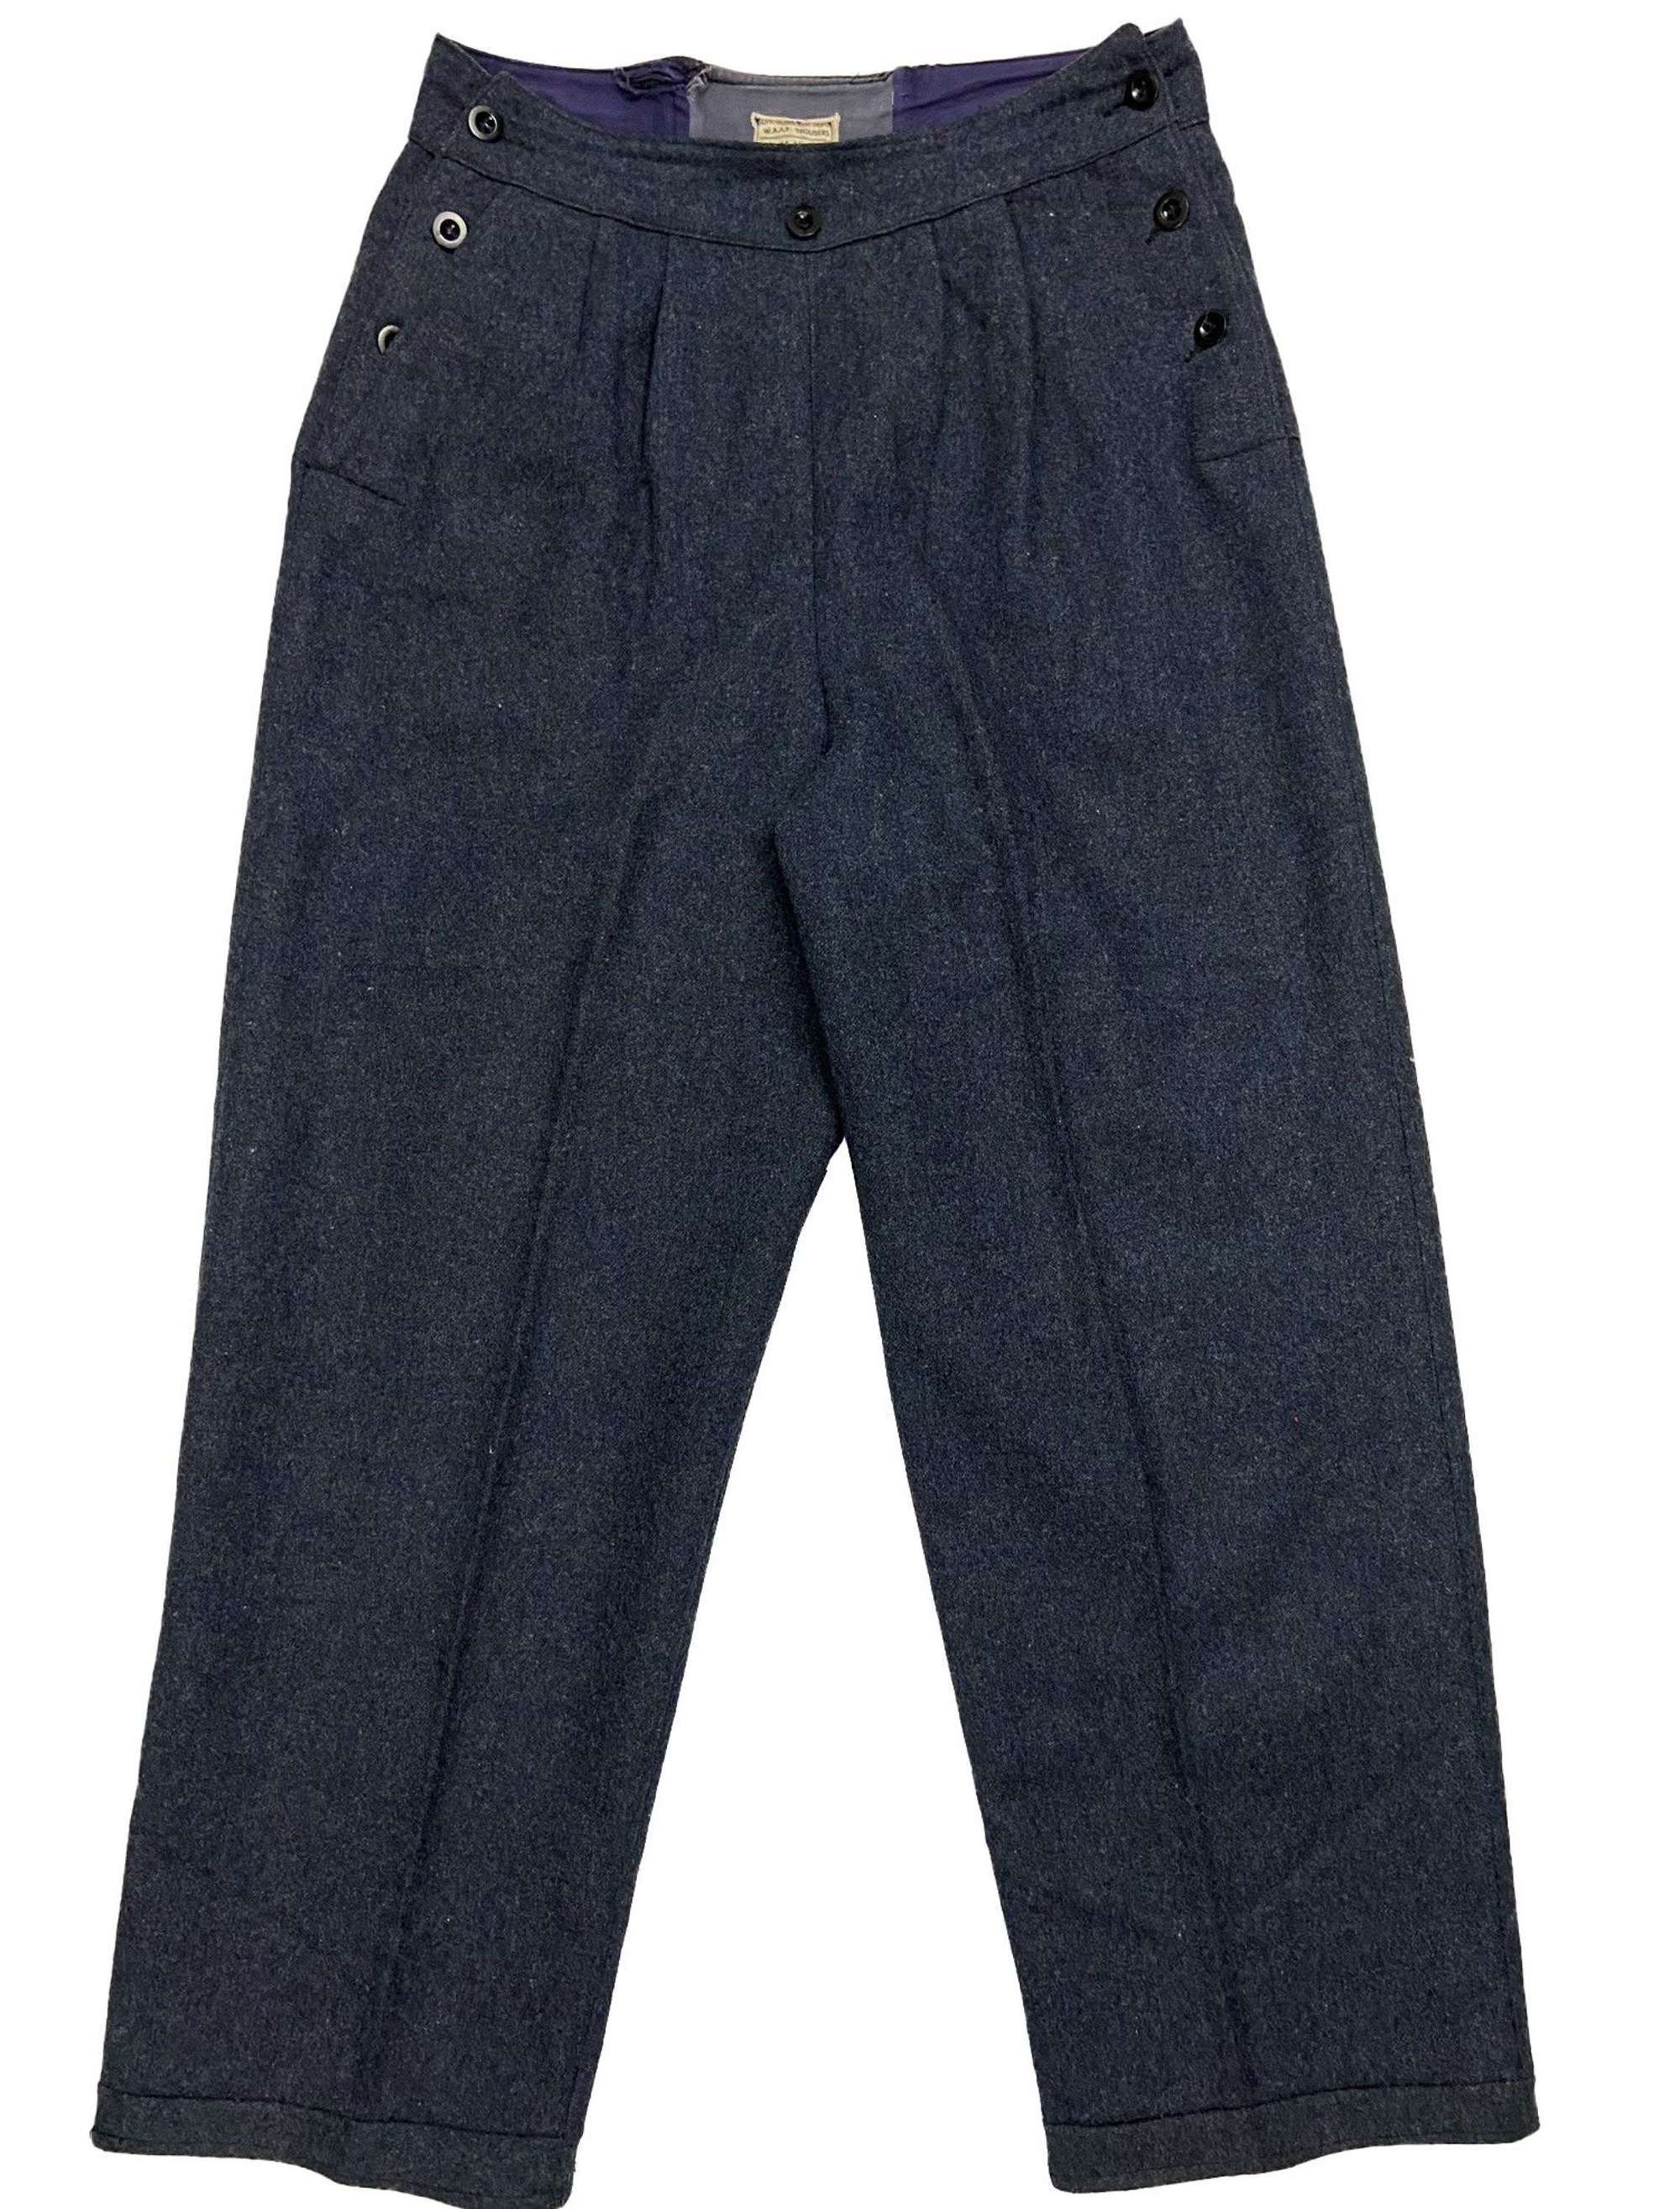 Original 1944 Dated WAAF Battledress Trousers